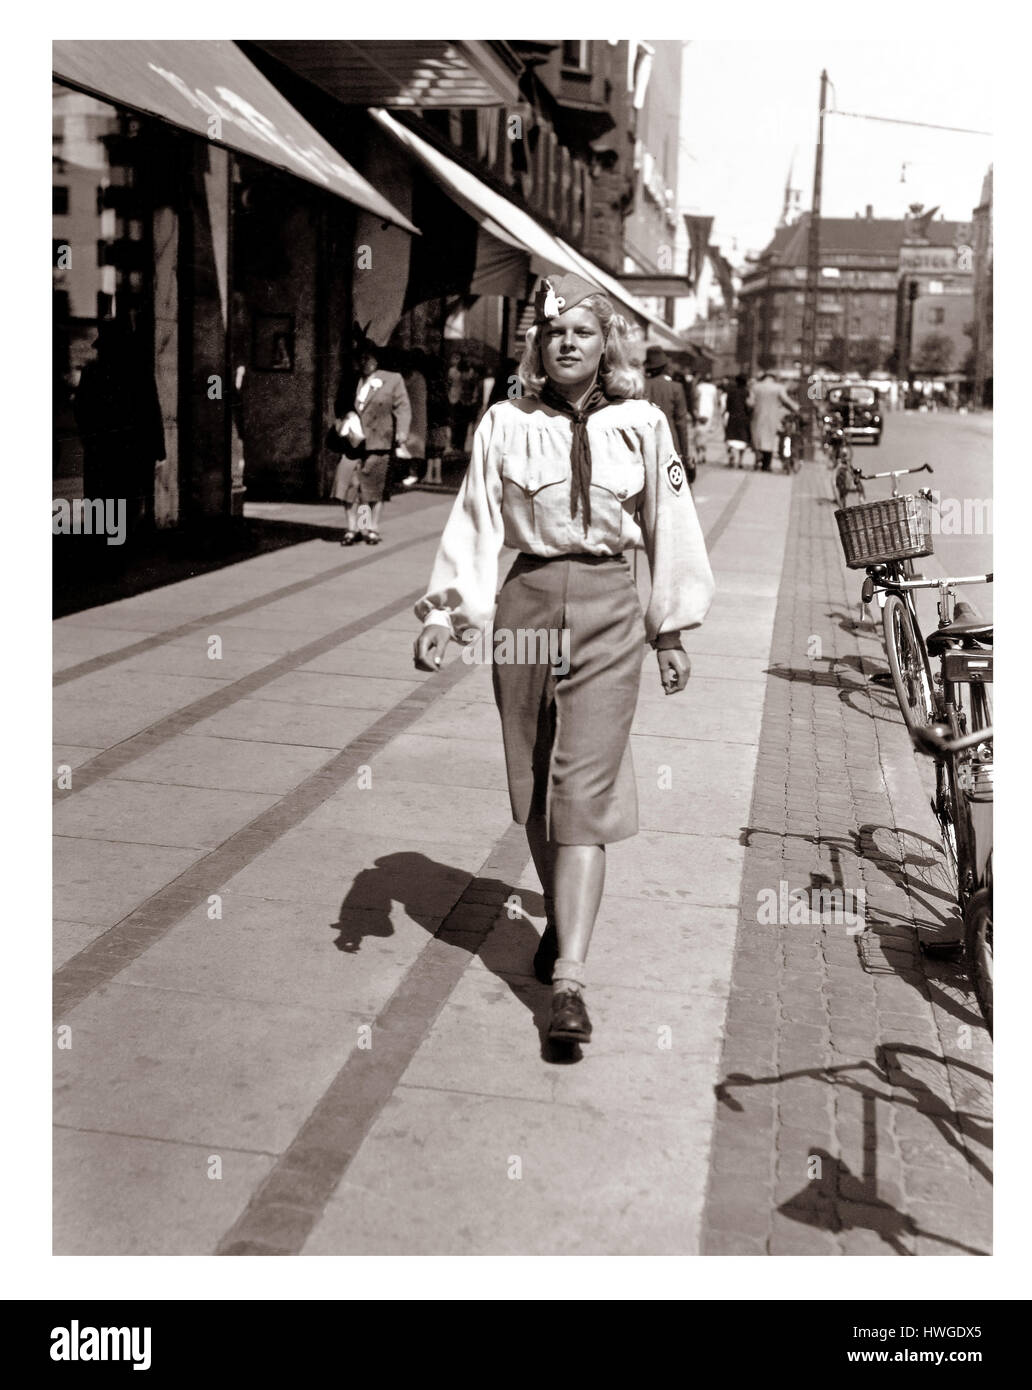 La bionda teenage del Partito nazista degli anni 30 è orgogliosa di camminare nell'uniforme del Partito nazionalsocialista dei lavoratori di Danimarca (Nationalsocialistiske Arbejderparti; DNSAP), il più grande partito nazista della Danimarca prima e durante la seconda guerra mondiale. Seconda guerra mondiale Foto Stock